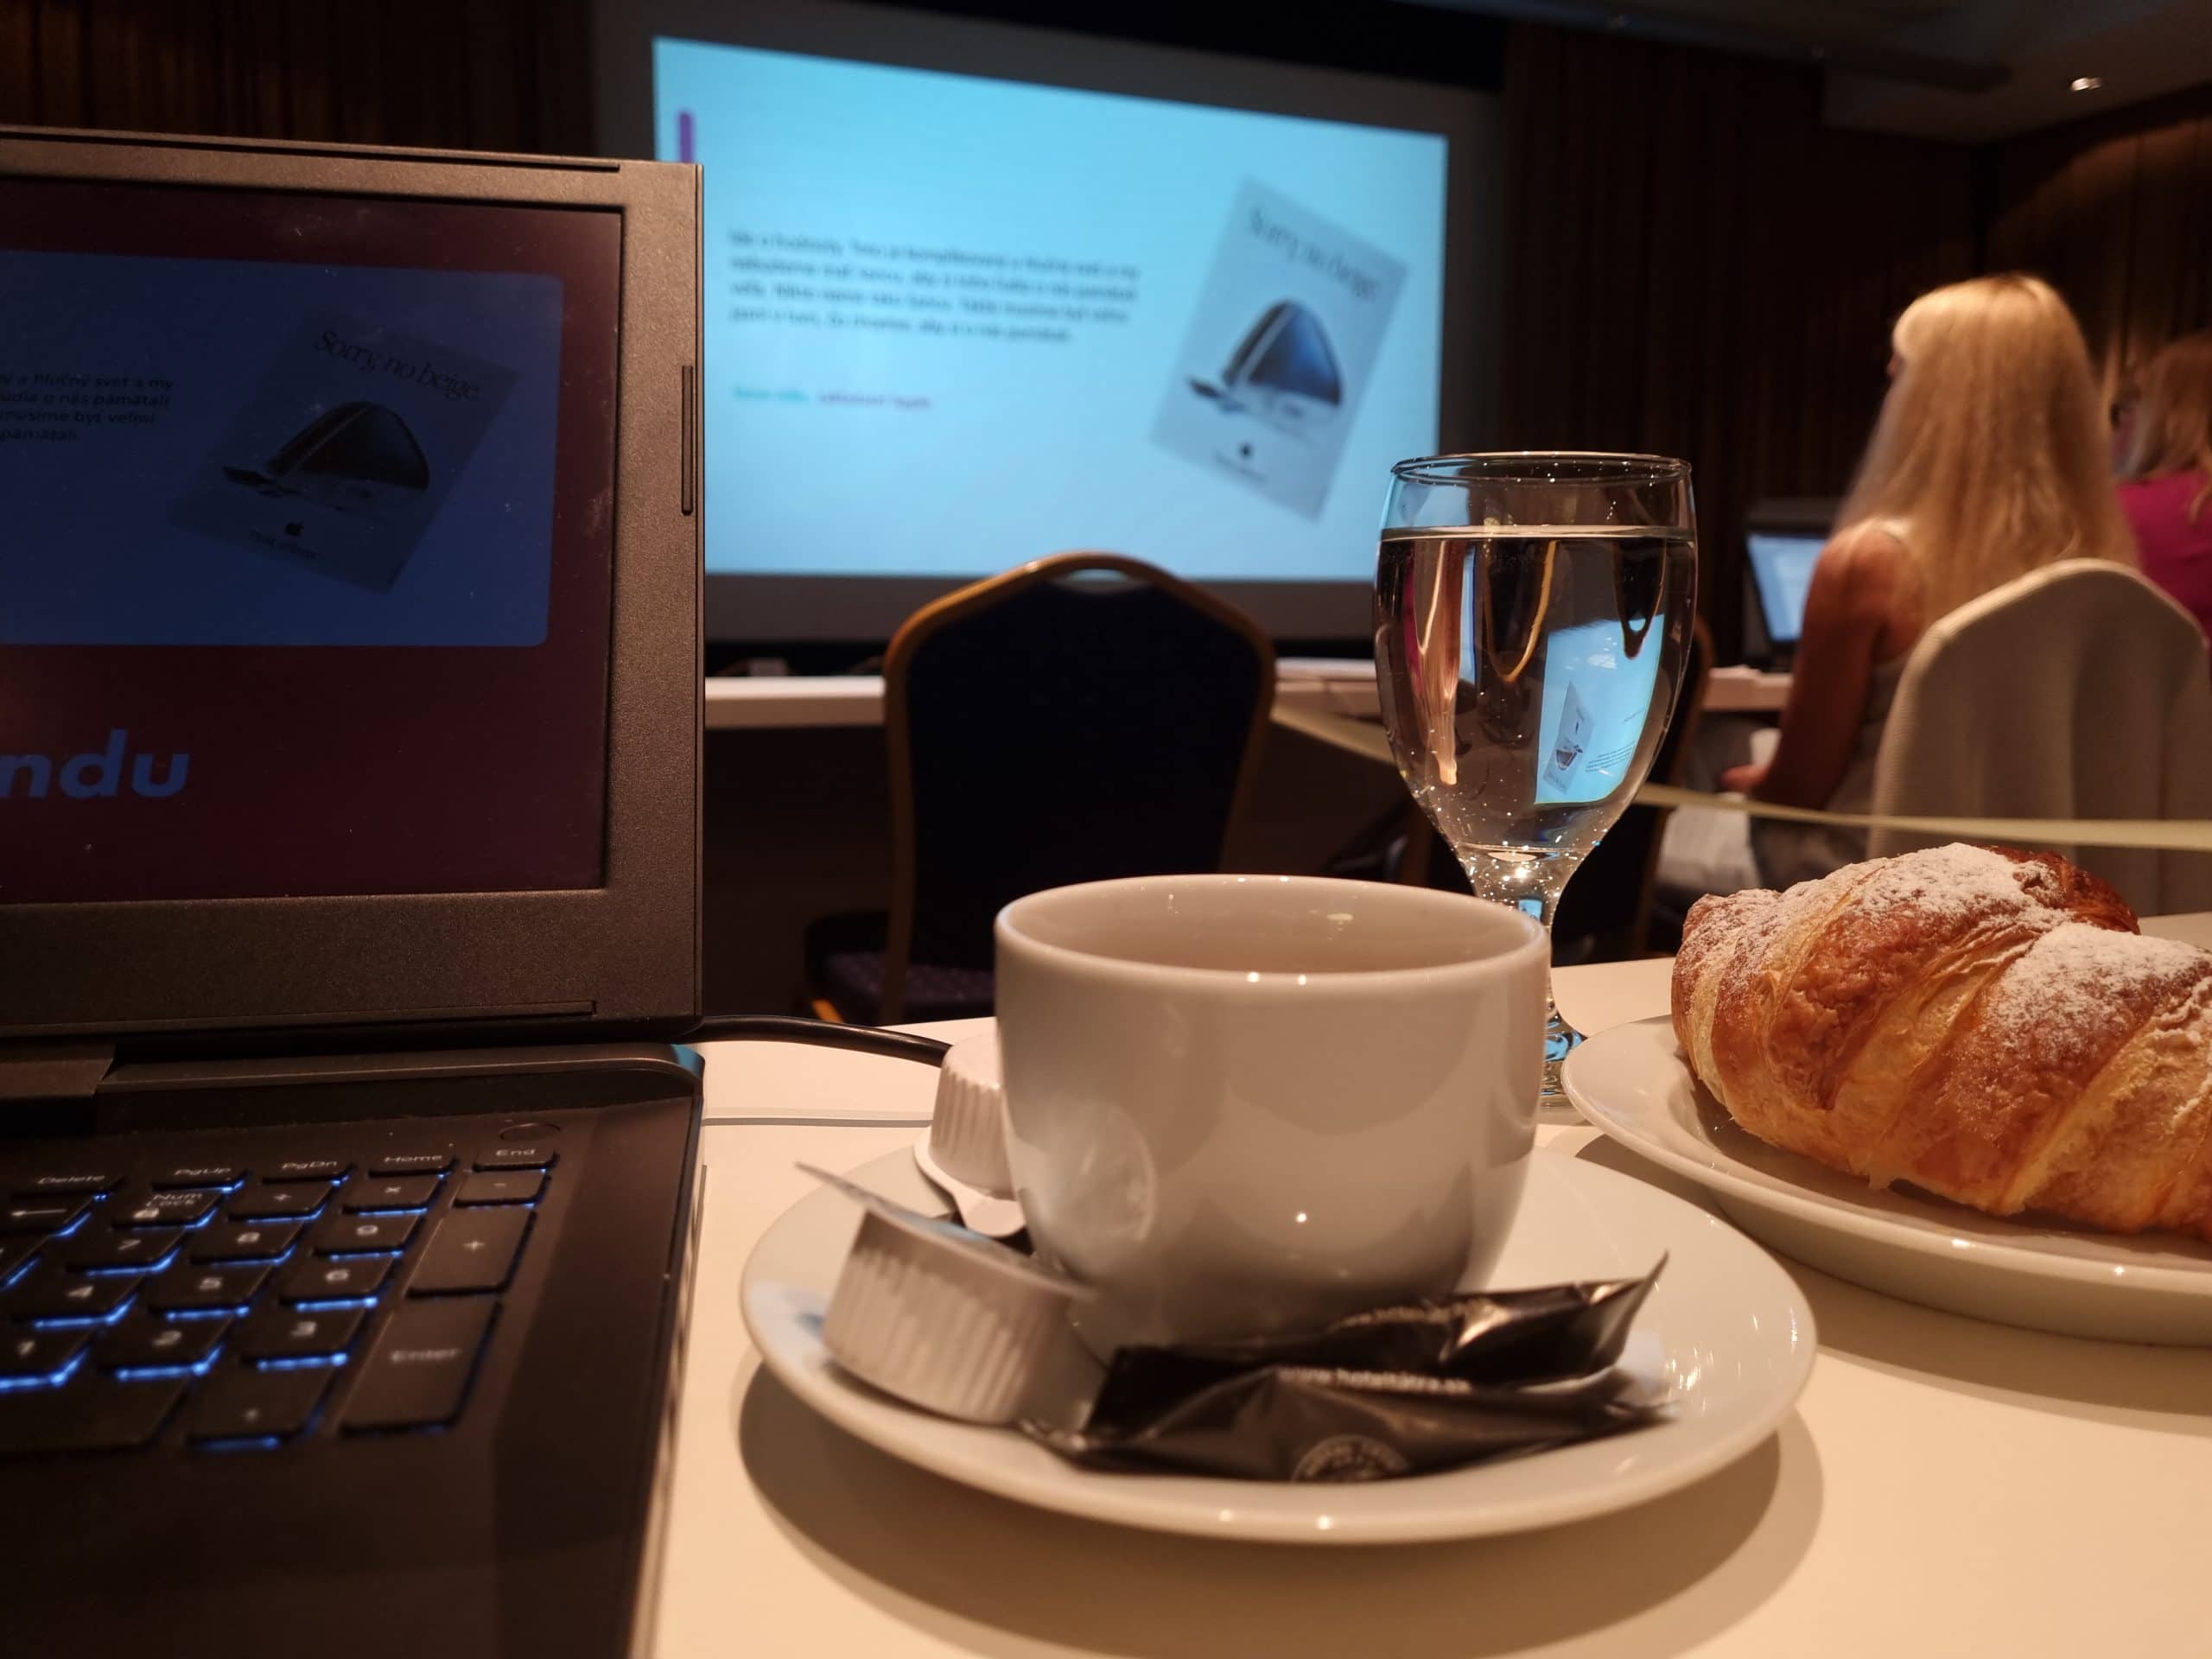 Káva a croissant na prednáške.